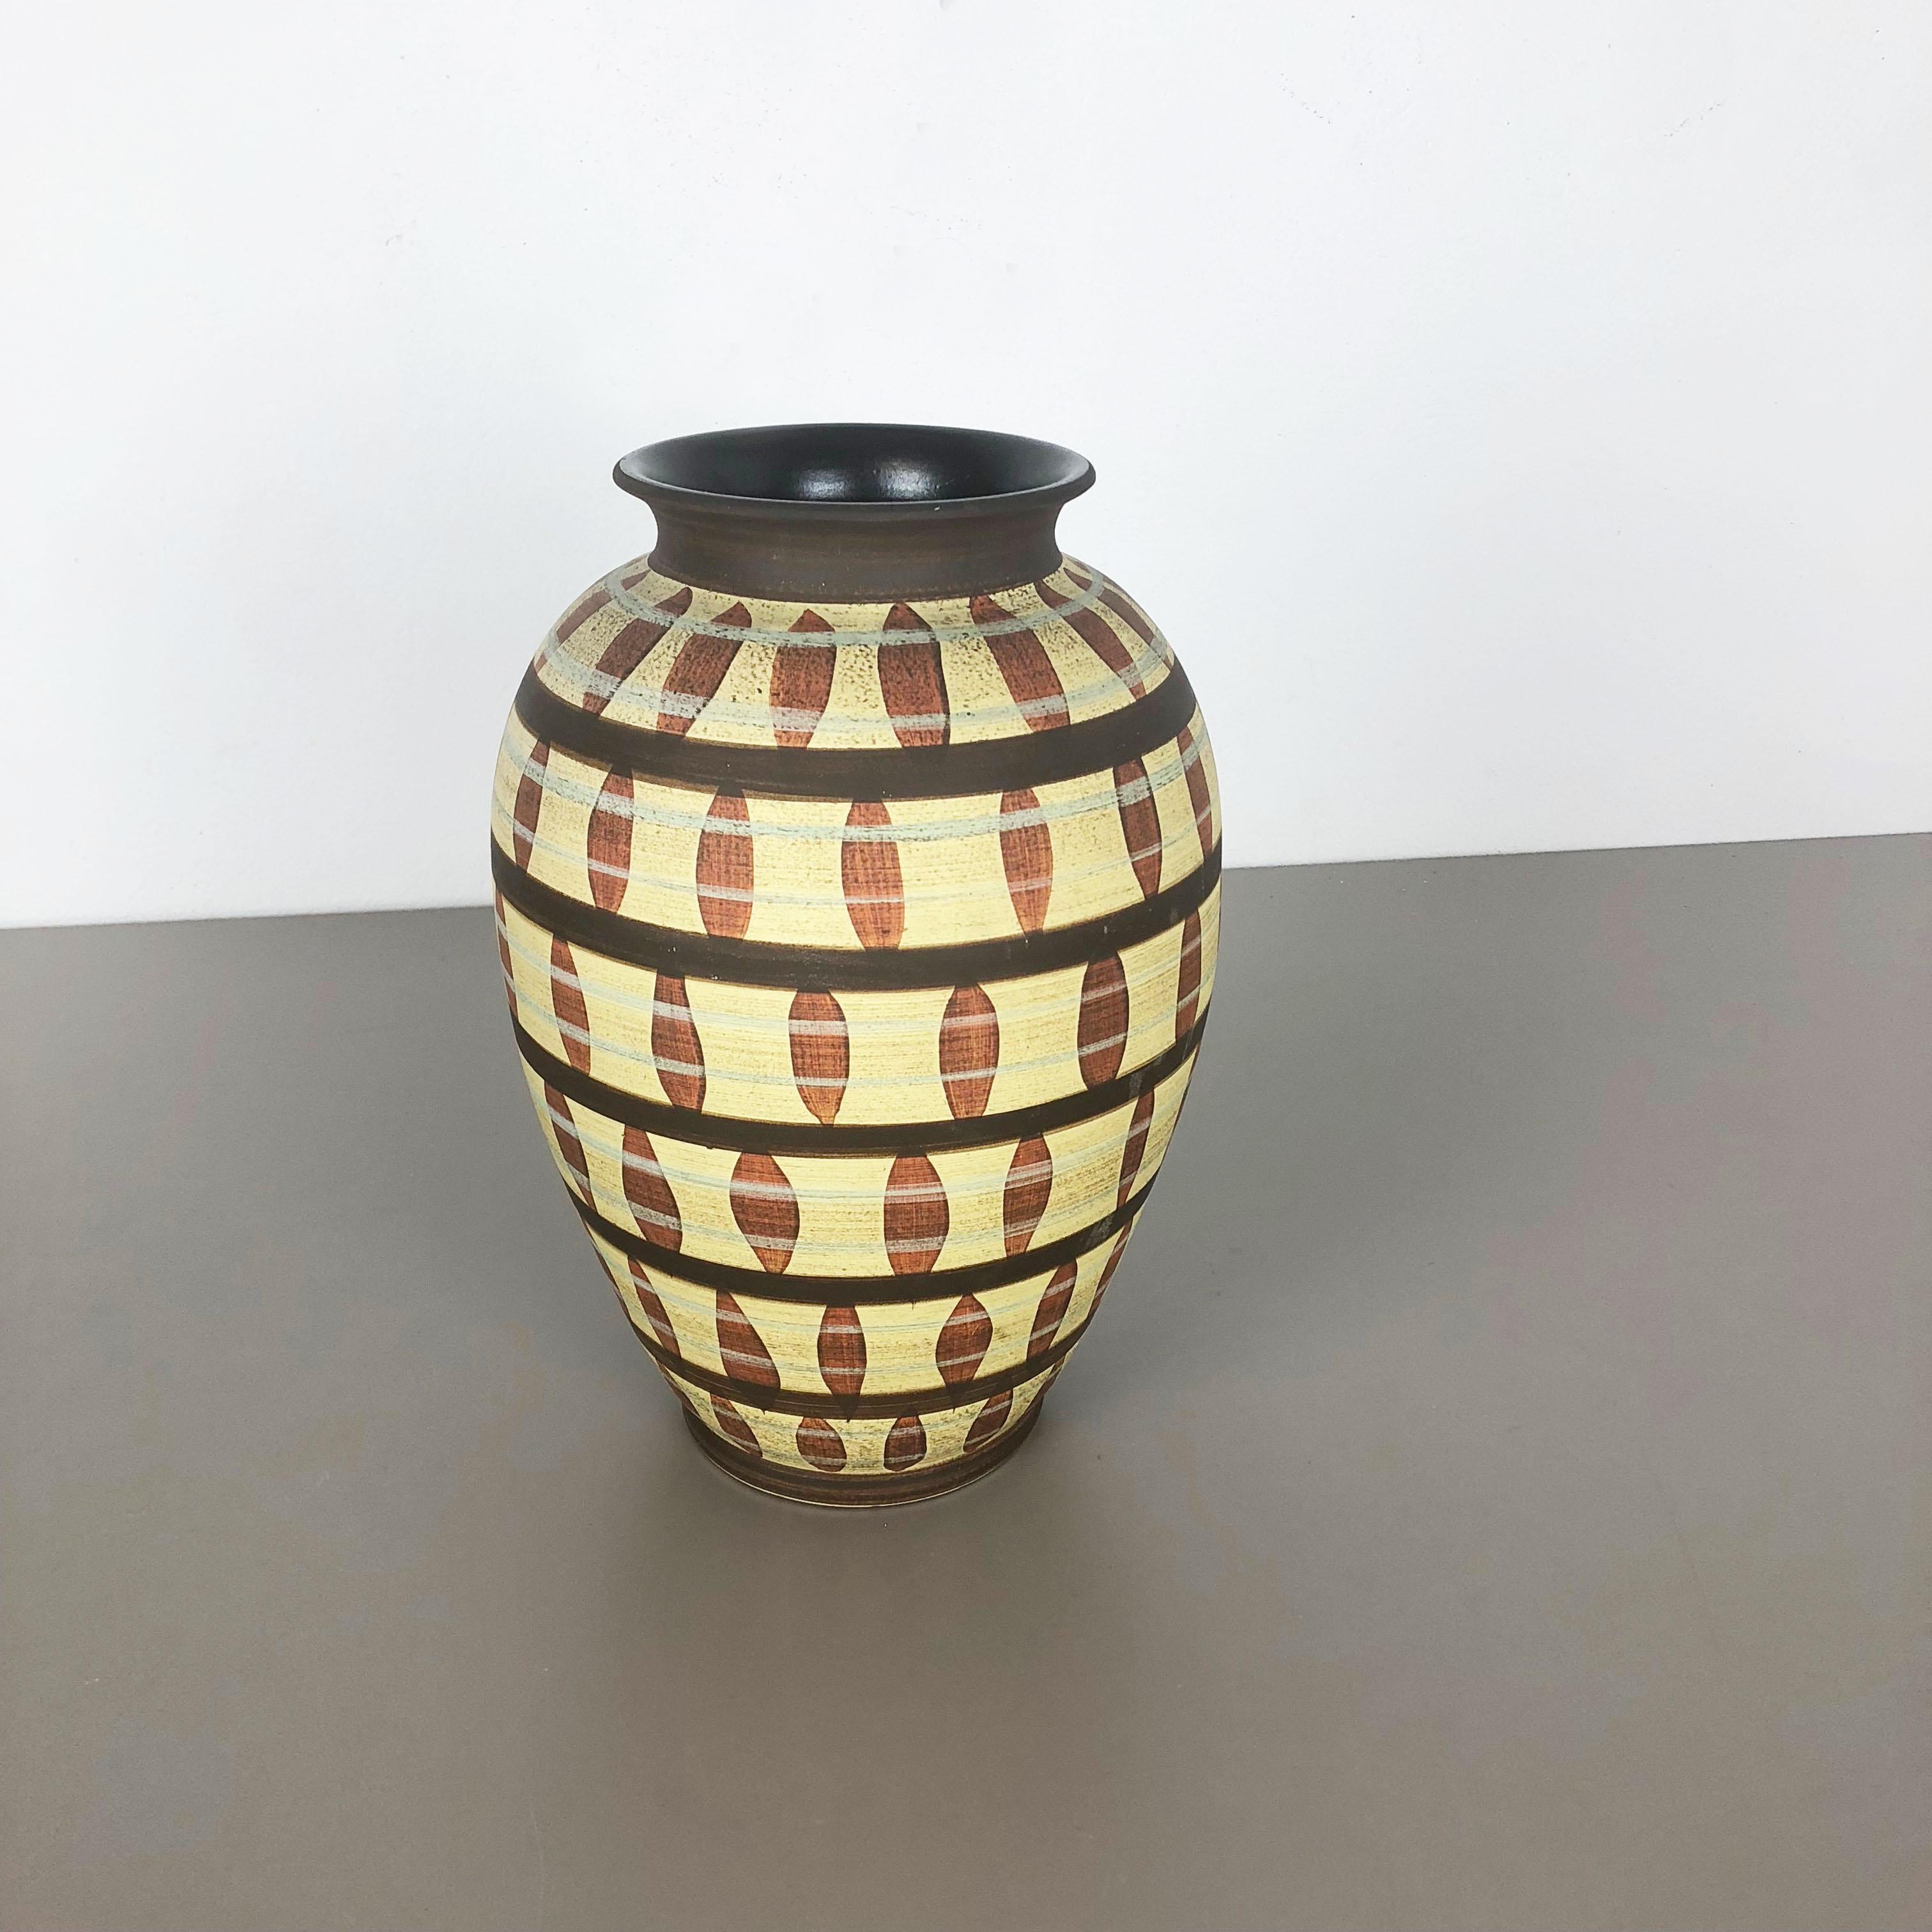 Article :

Vase en céramique


Producteur :

Simon Peter Gerz, Allemagne


Décennie :

1950s



Description :

Vase original en céramique de grès des années 1950, originaire d'Allemagne. Production allemande de haute qualité avec